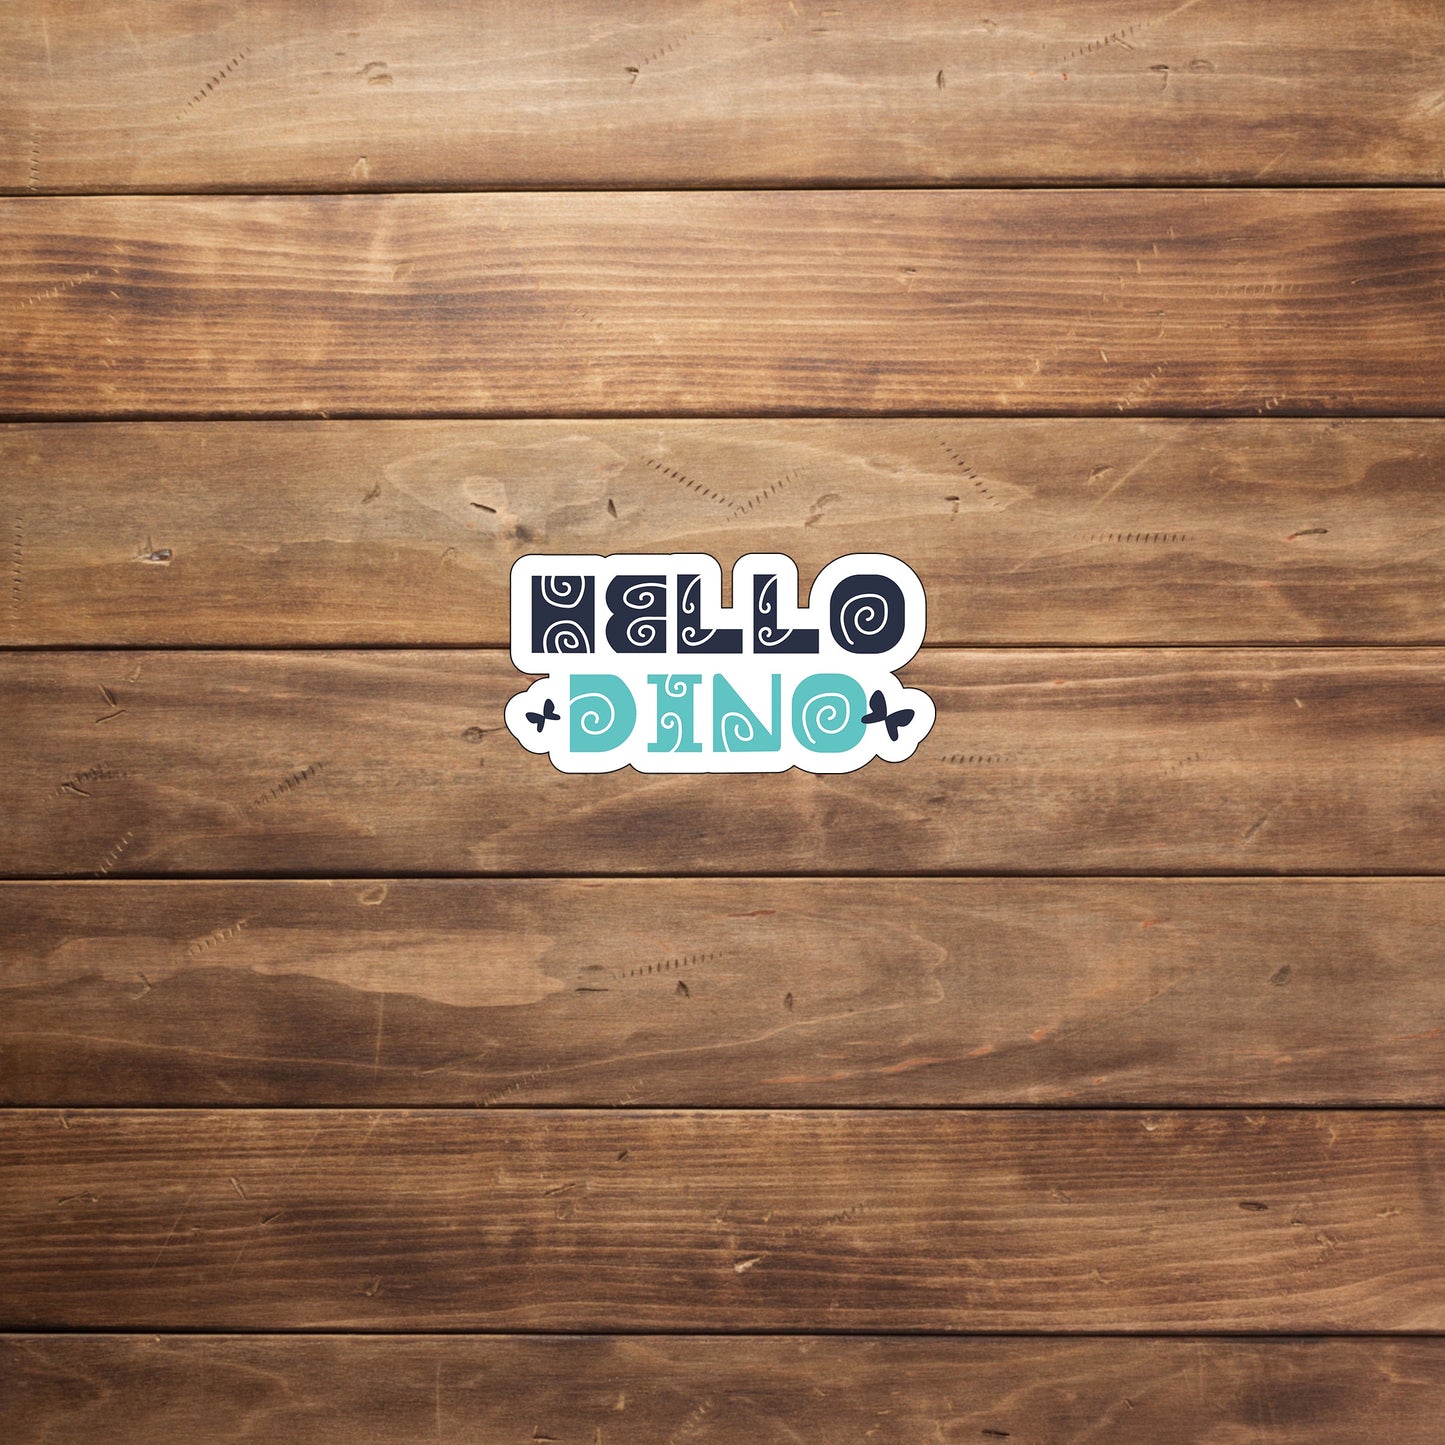 Dino  Sticker